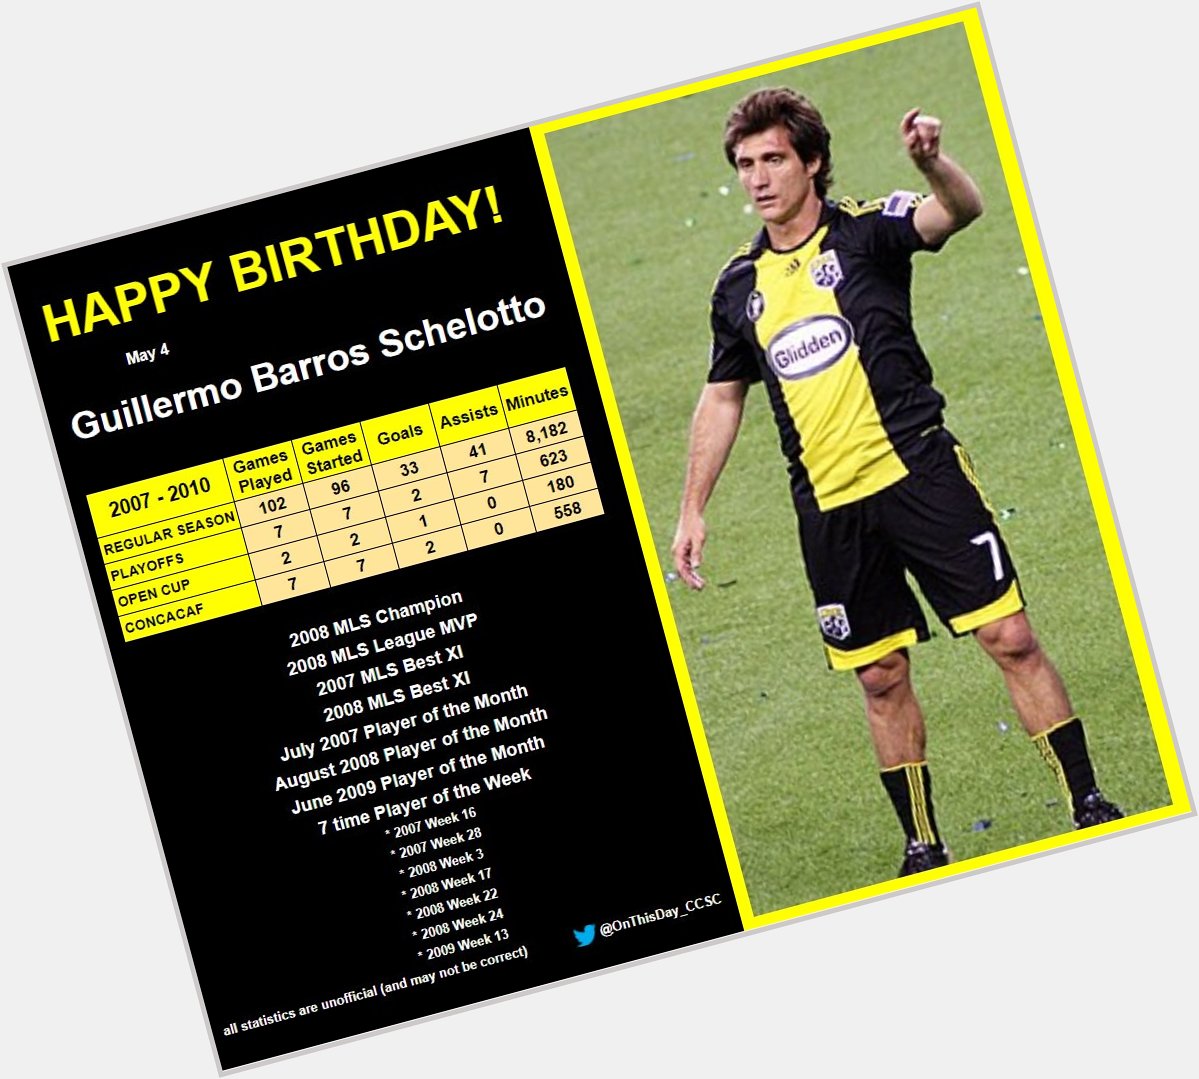 5-4
Happy Birthday, Guillermo Barros Schelotto!   